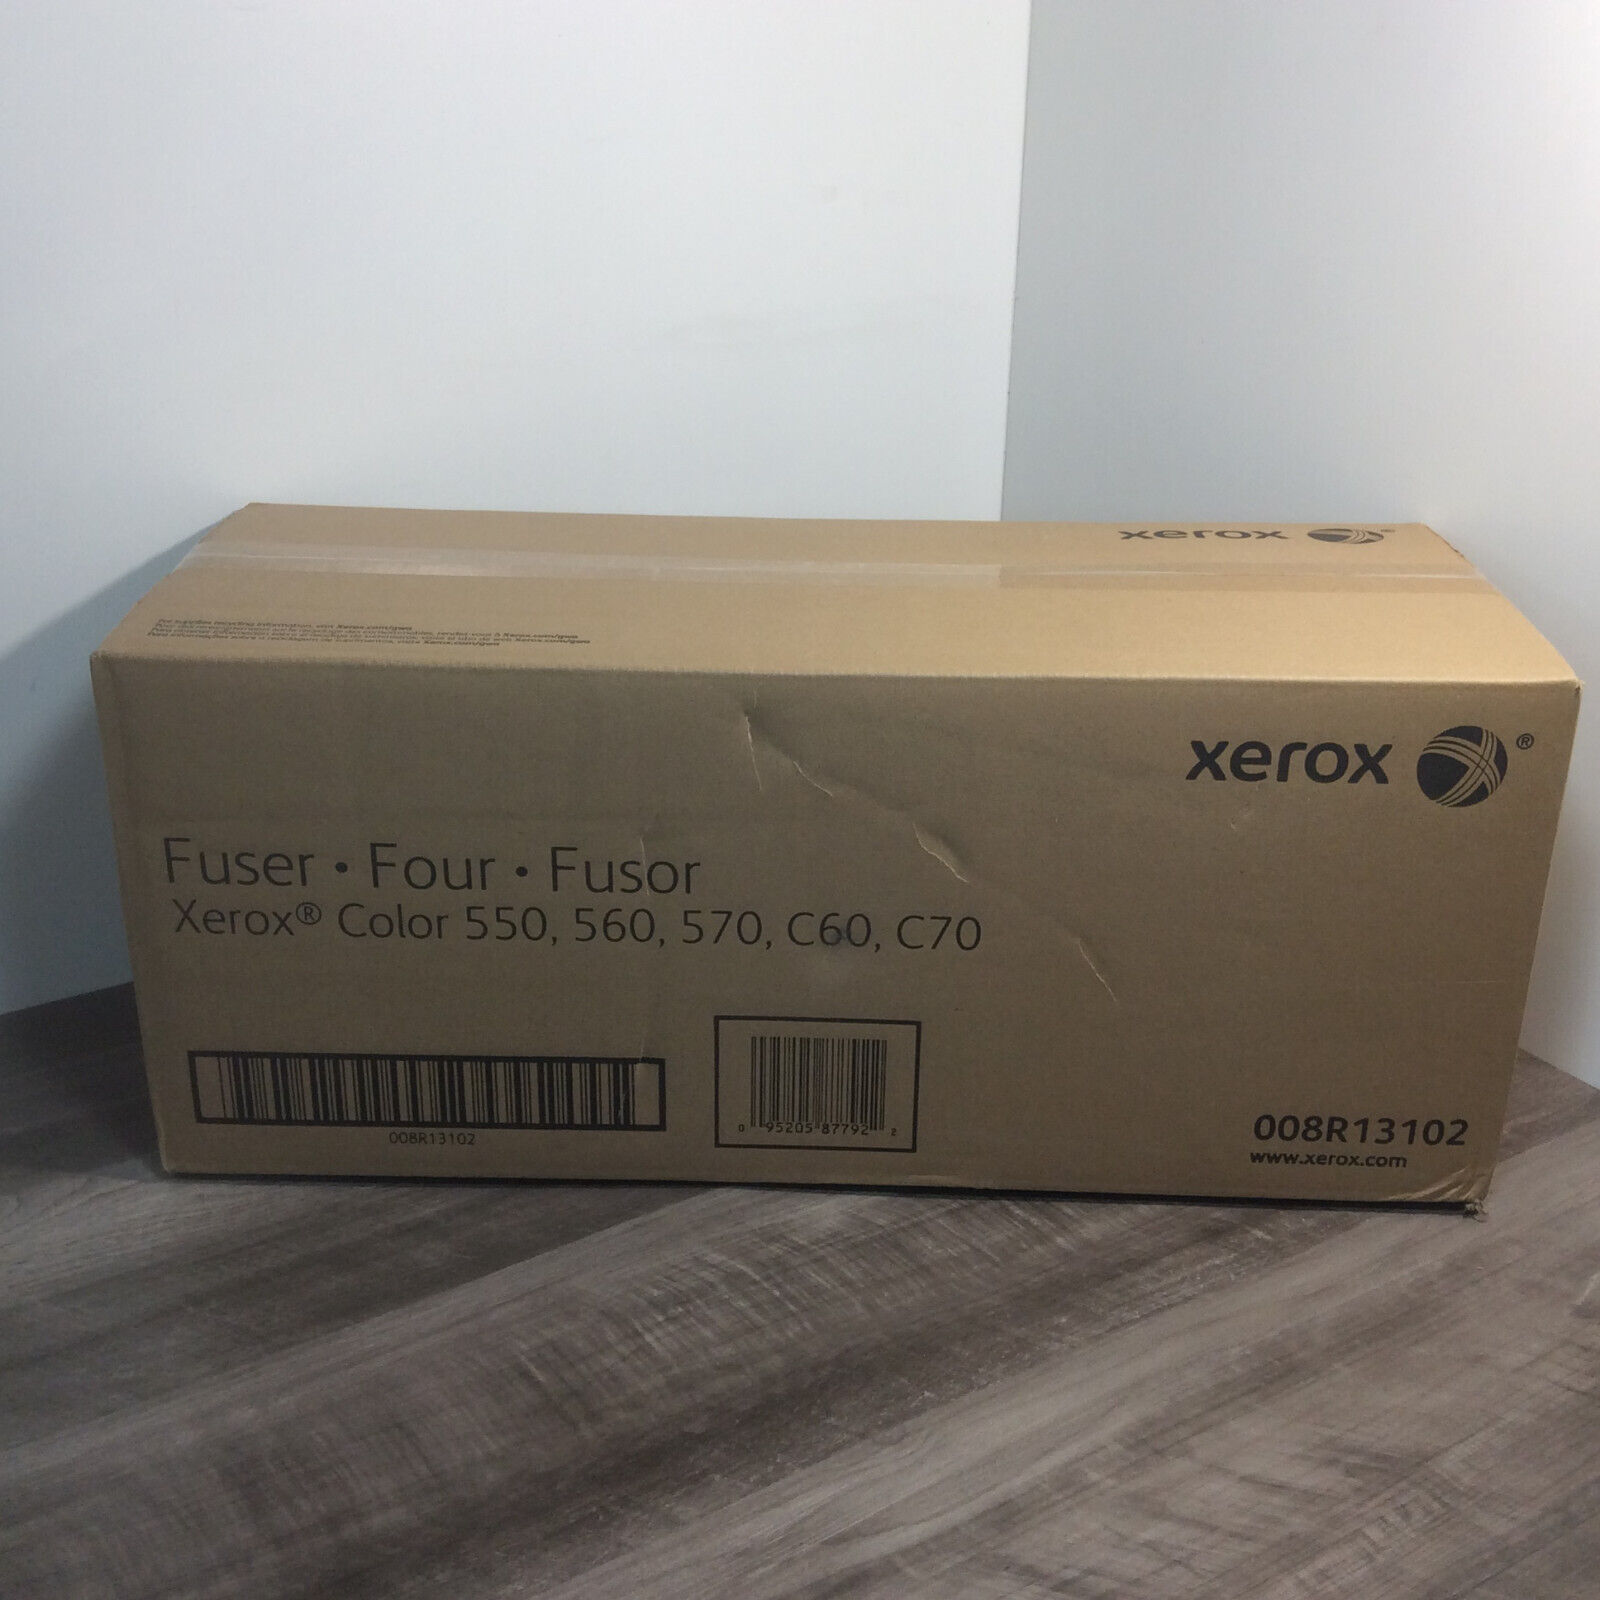 XEROX 550 560 570 C60 C70 COLOR FUSER Assy New Oem Original 008R13102 Retail box